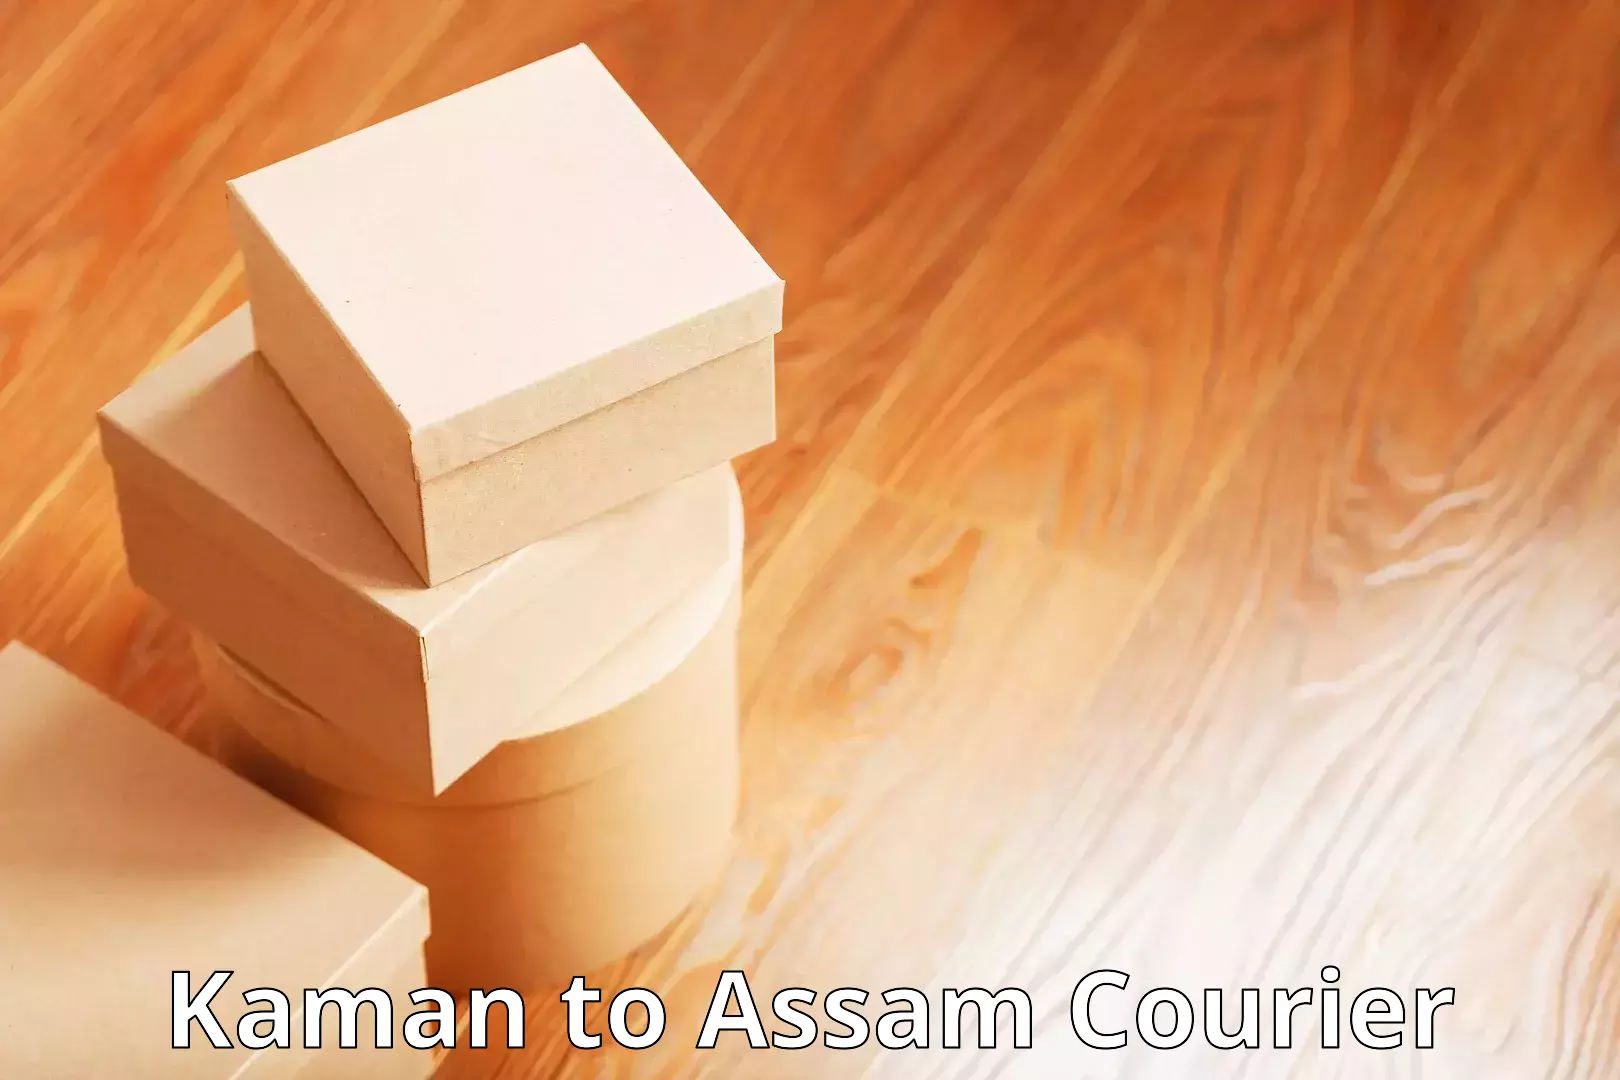 Cost-effective courier options Kaman to Jorabat